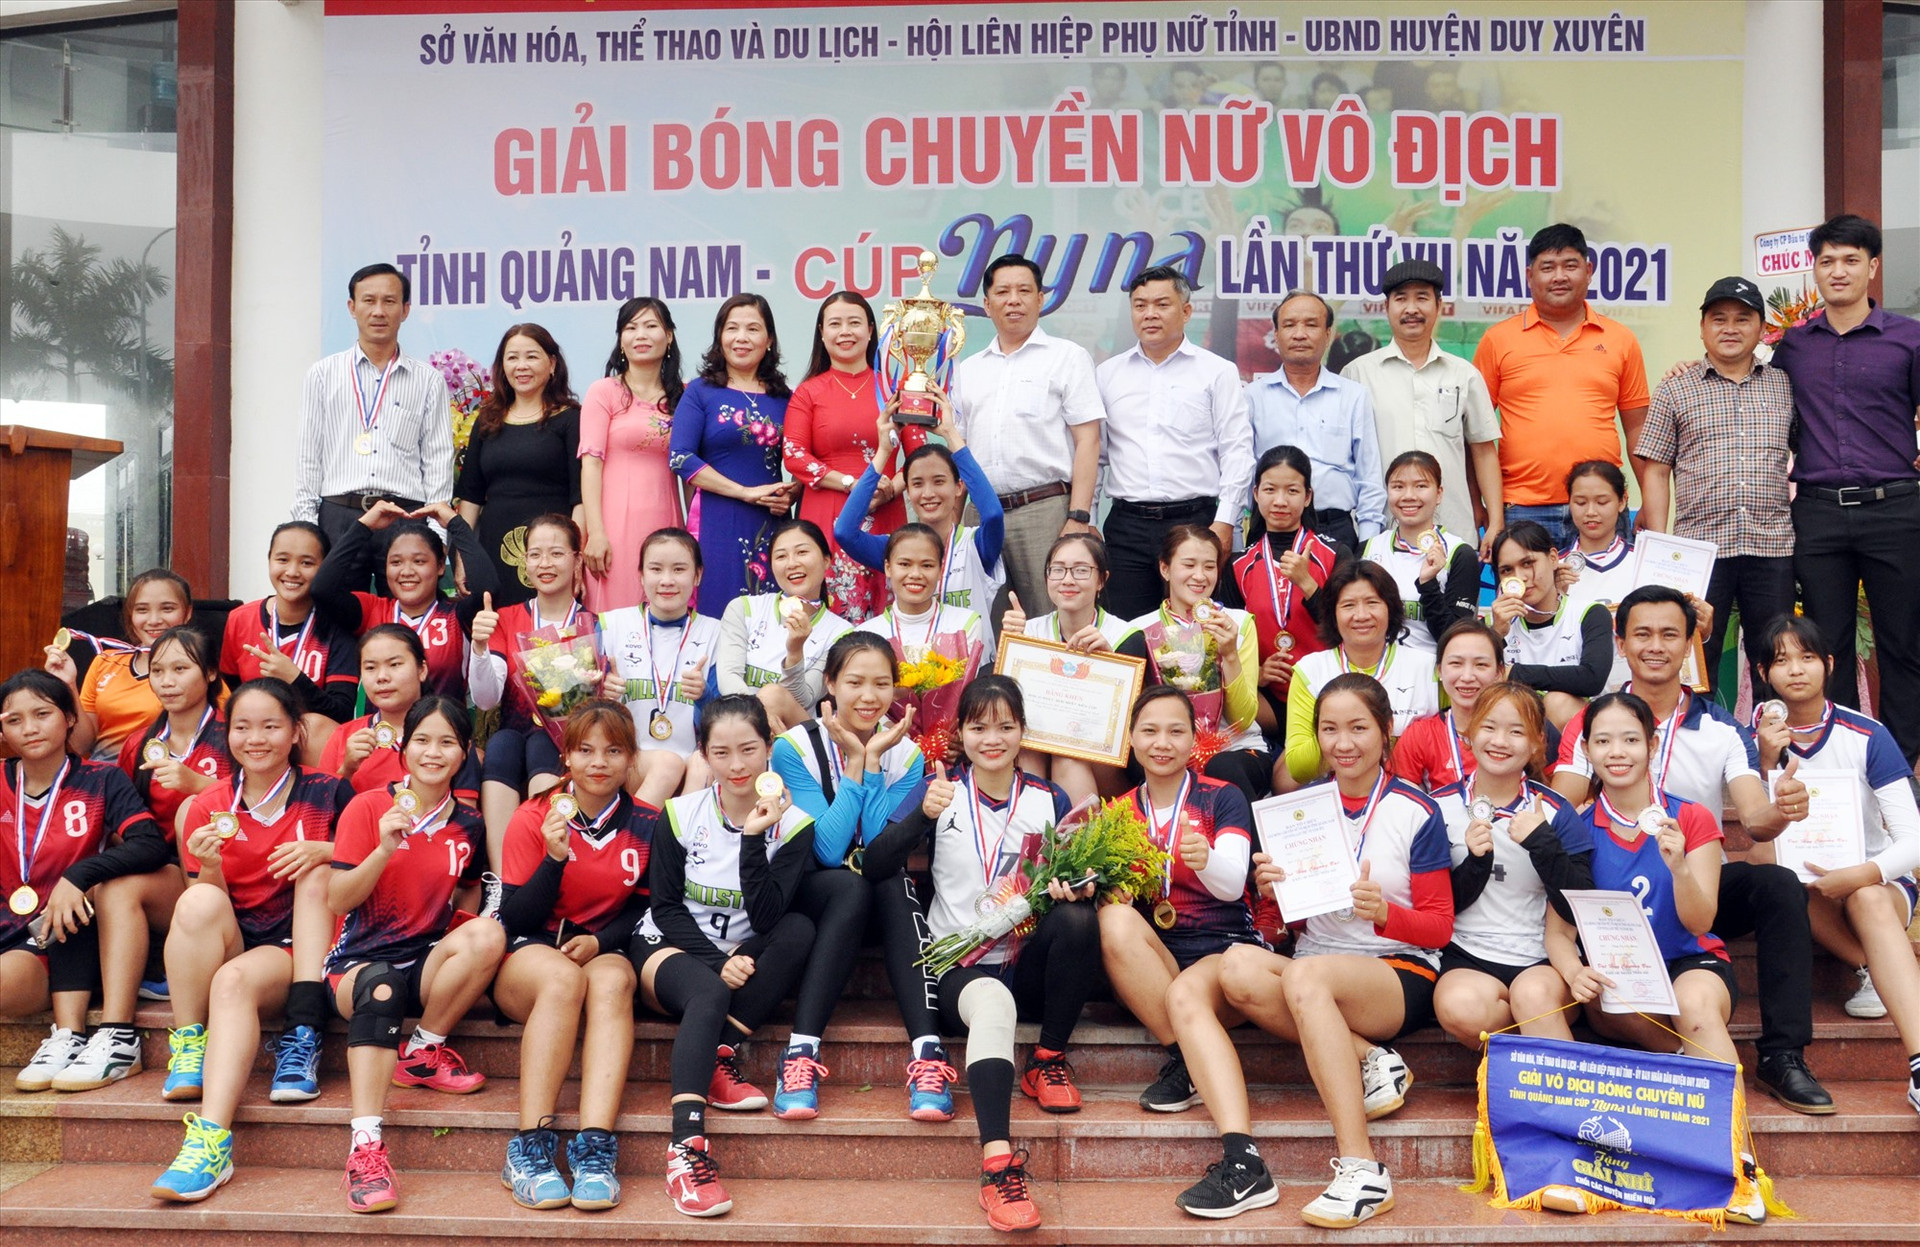 Đội bóng chuyền nữ Tam Kỳ đoạt chức vô địch giải bóng chuyền nữ tỉnh năm 2021. Ảnh: T.VY